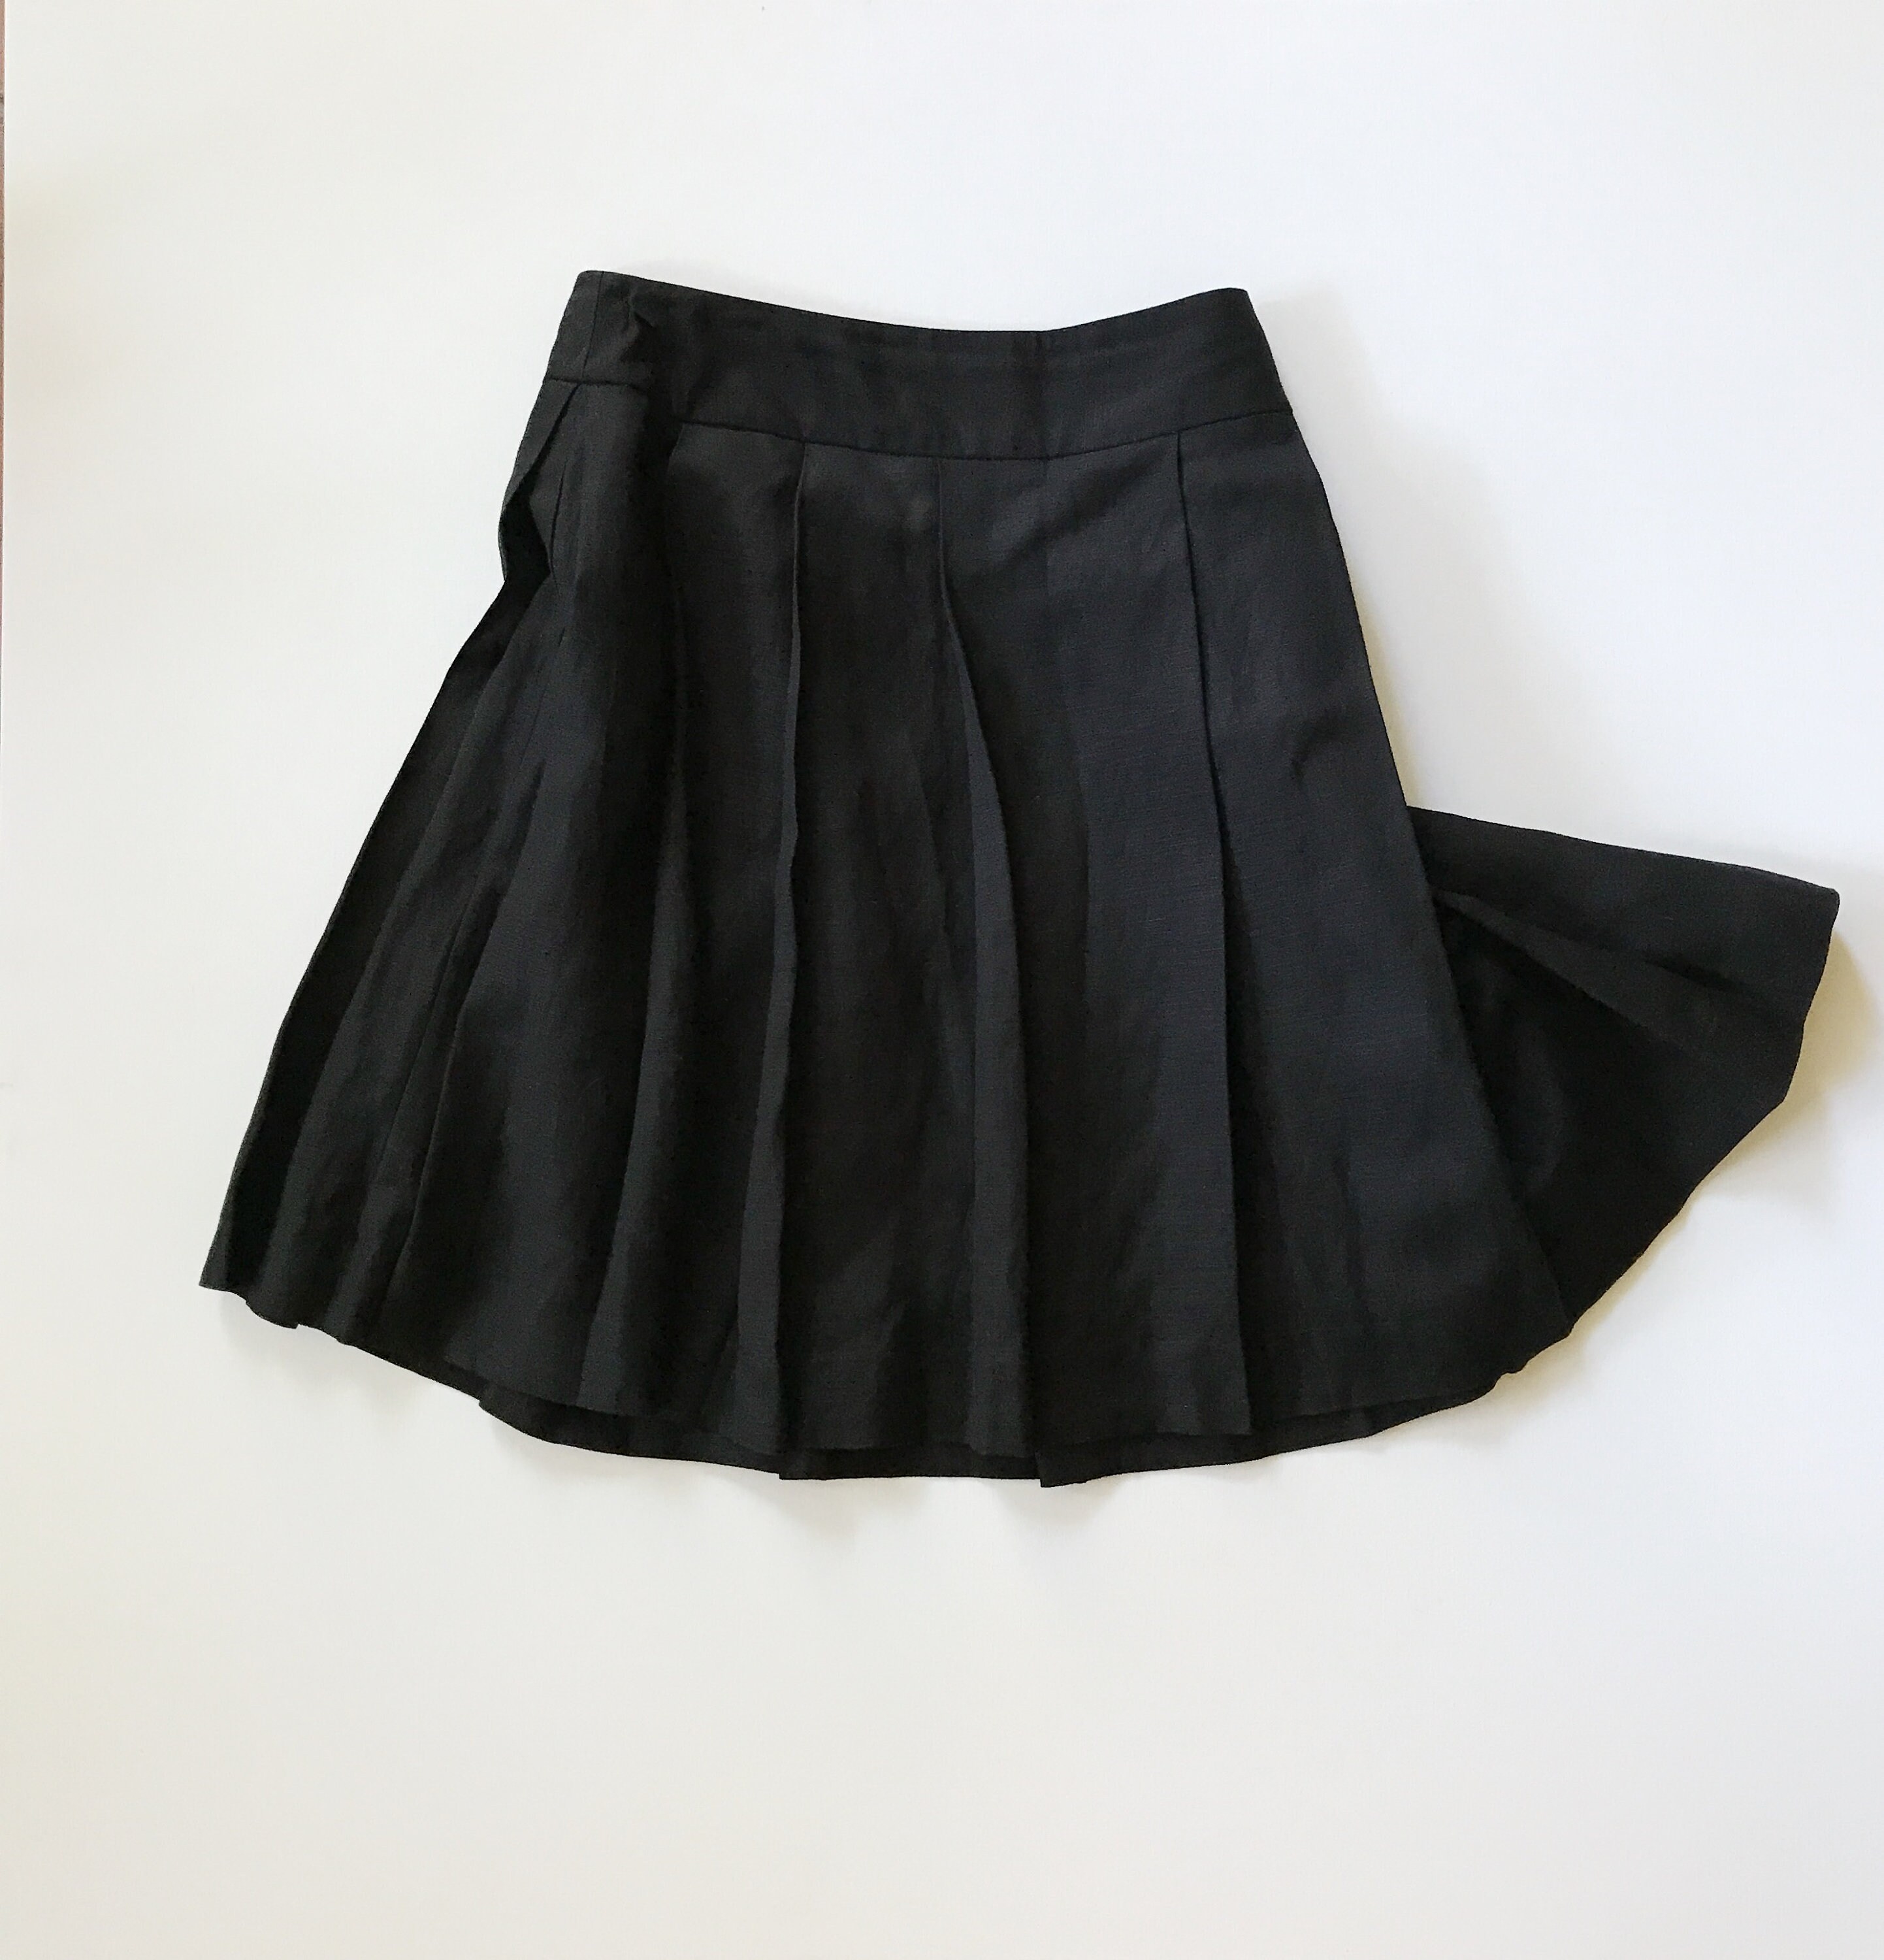 linen skirt / black linen skirt / pleated short skirt